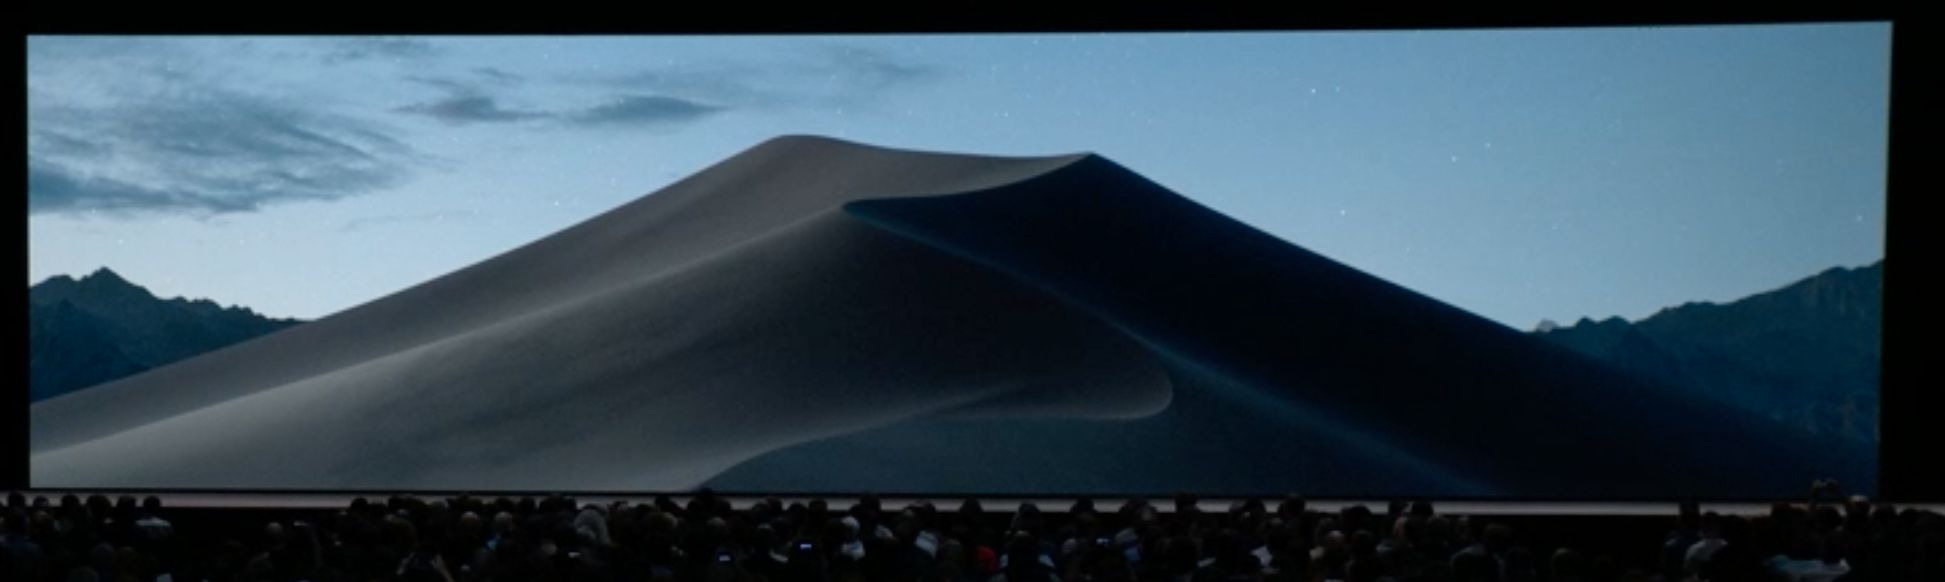 Dark Mode skifter også skrivebordsbakgrunnen. Plutselig er det natt i Mojave-ørkenen.